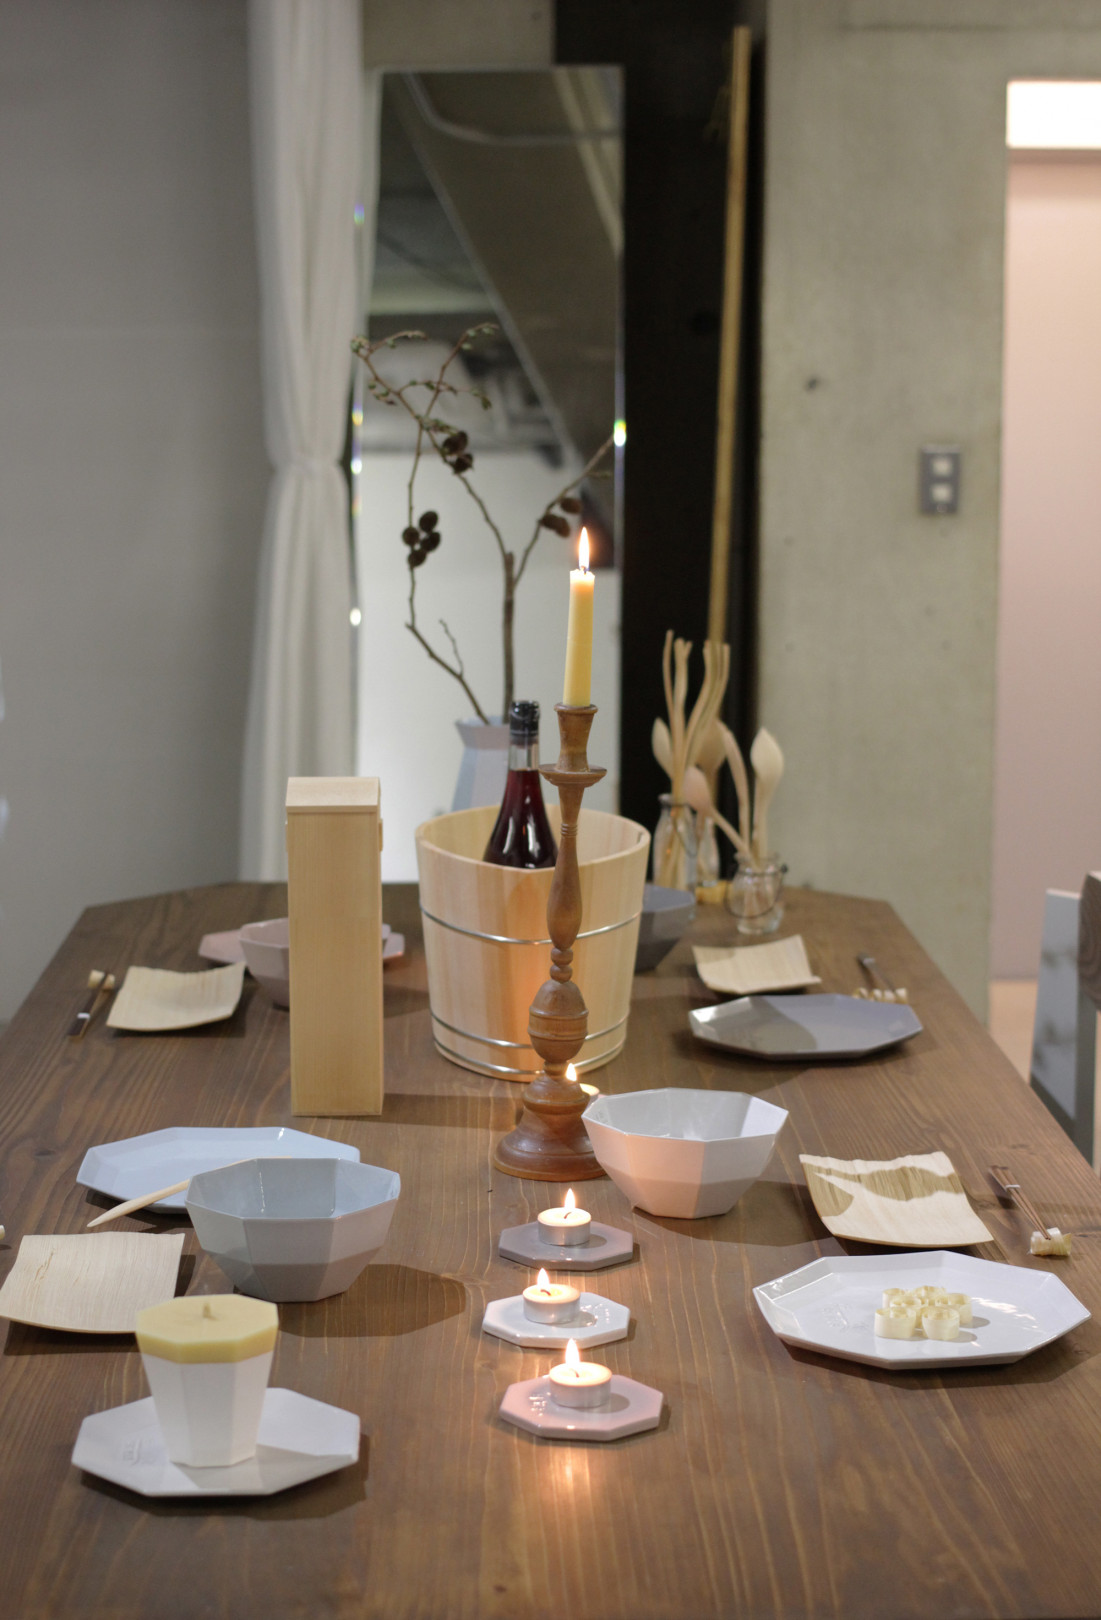 KIKOFのテーブルに器、中川木工芸のカトラリーや取り皿が並ぶ。キャンドルスタンドには、柔らかな色合いの大與の和ろうそく。穏やかな温もりを感じさせる食卓演出